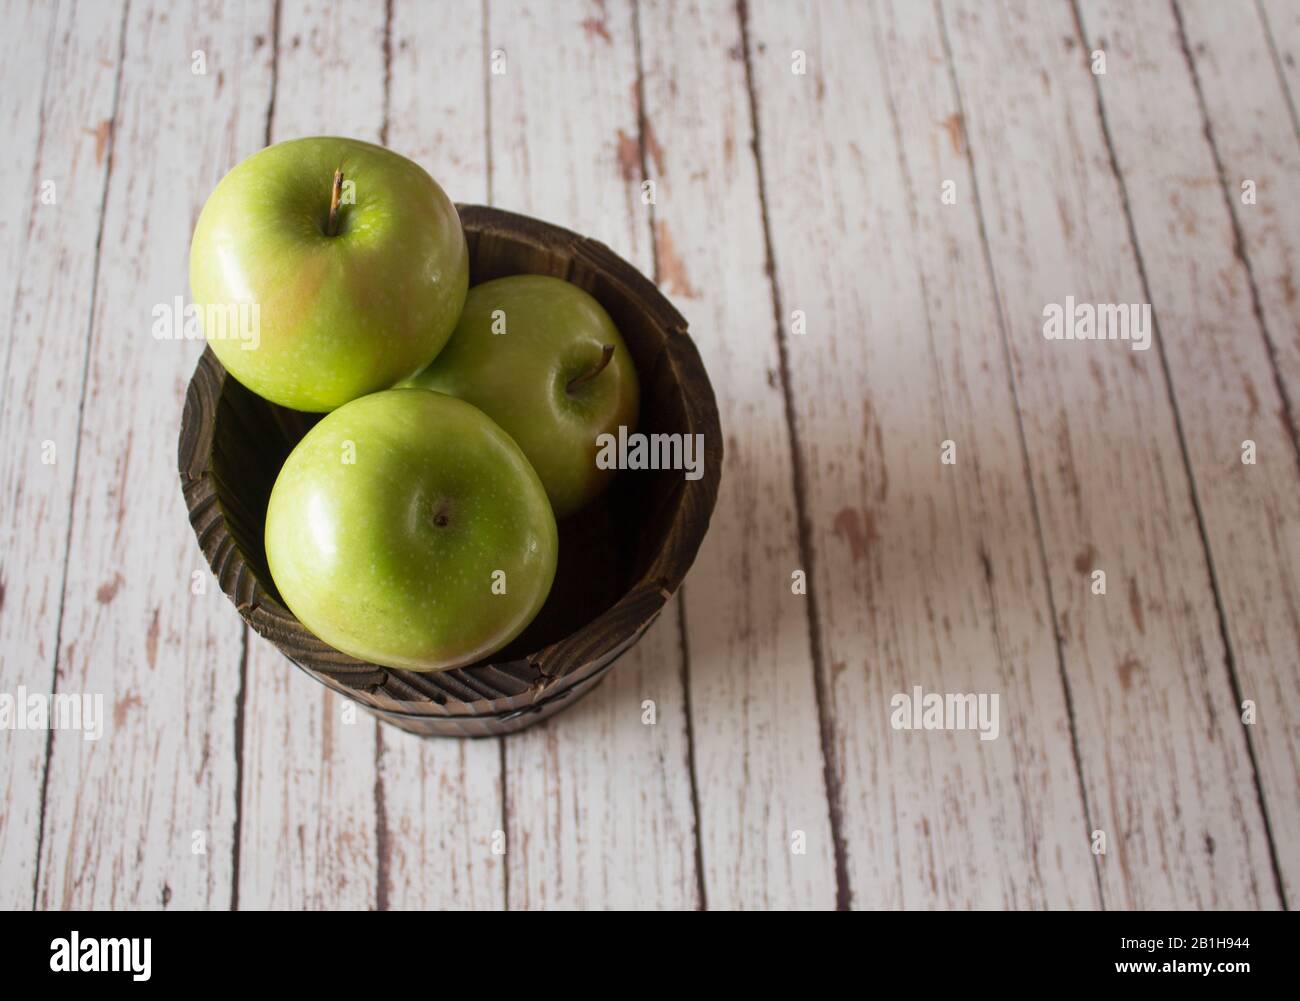 apples on bucket Stock Photo